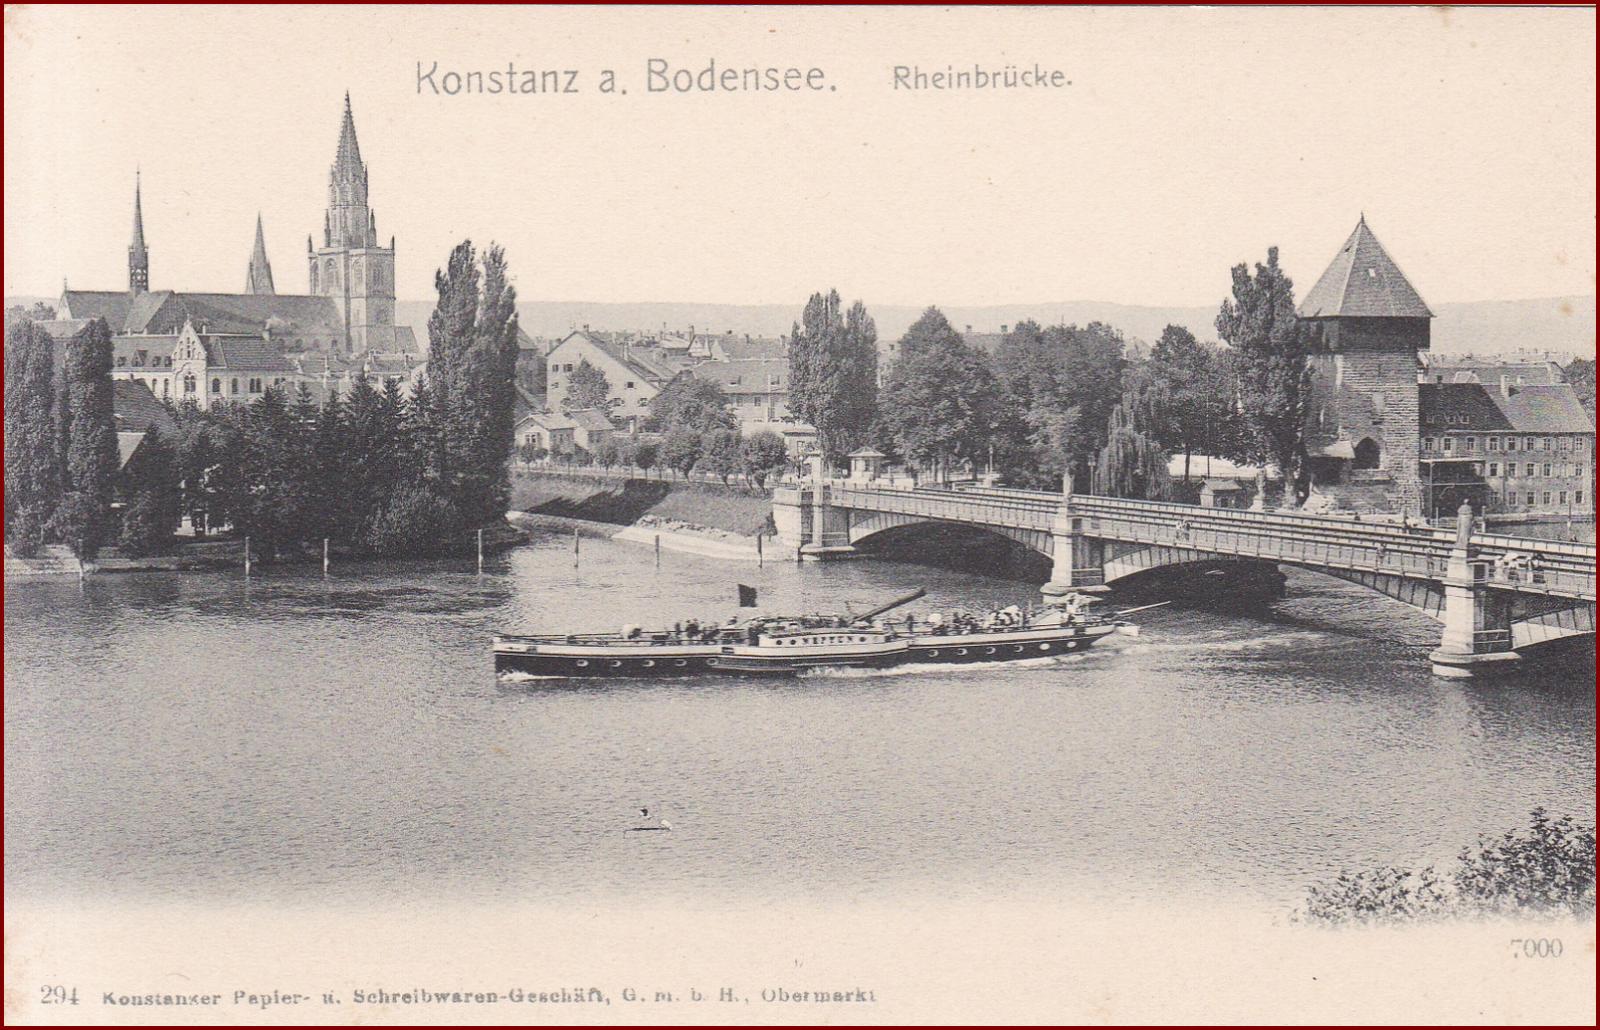 Konstanz (Kostnica) * Rheinbrücke, lode, Bodensee * Nemecko * Z1961 - Pohľadnice